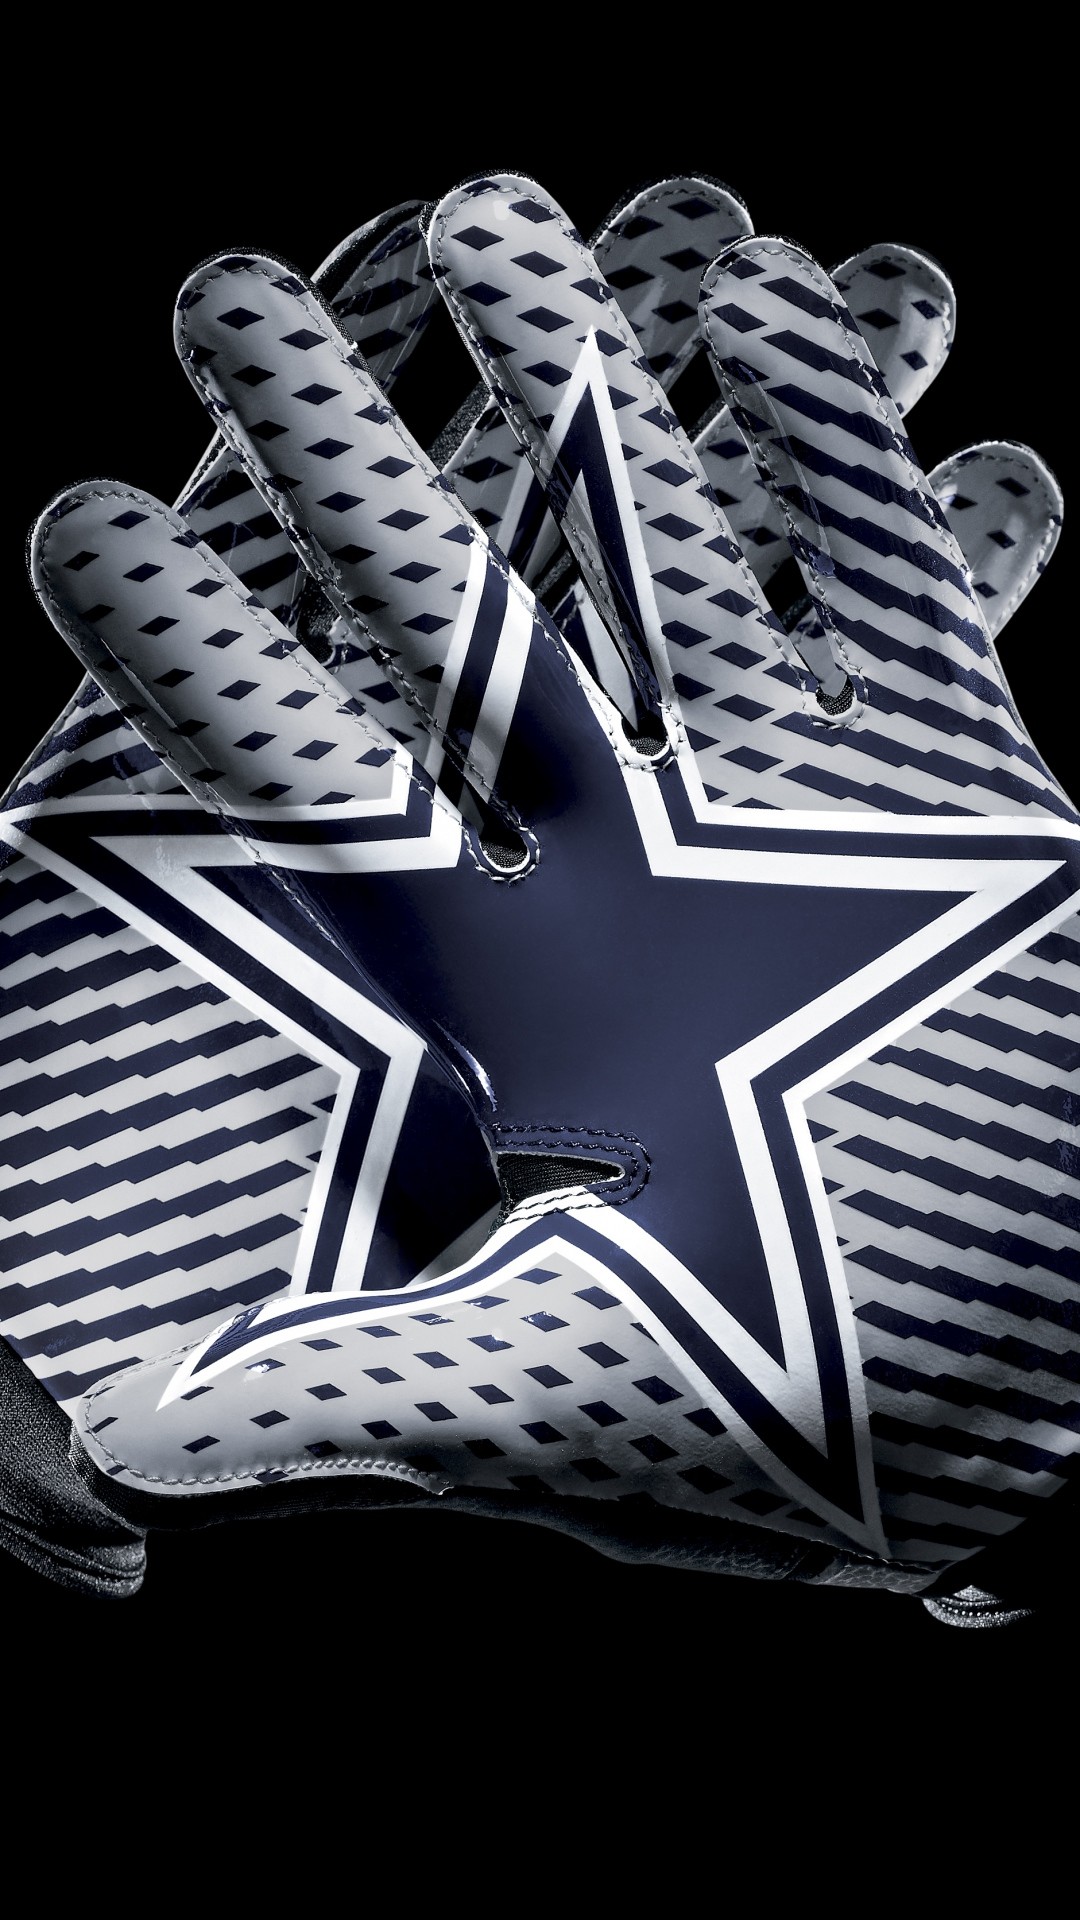 1080x1920 HD Dallas Cowboys Iphone Wallpaper.